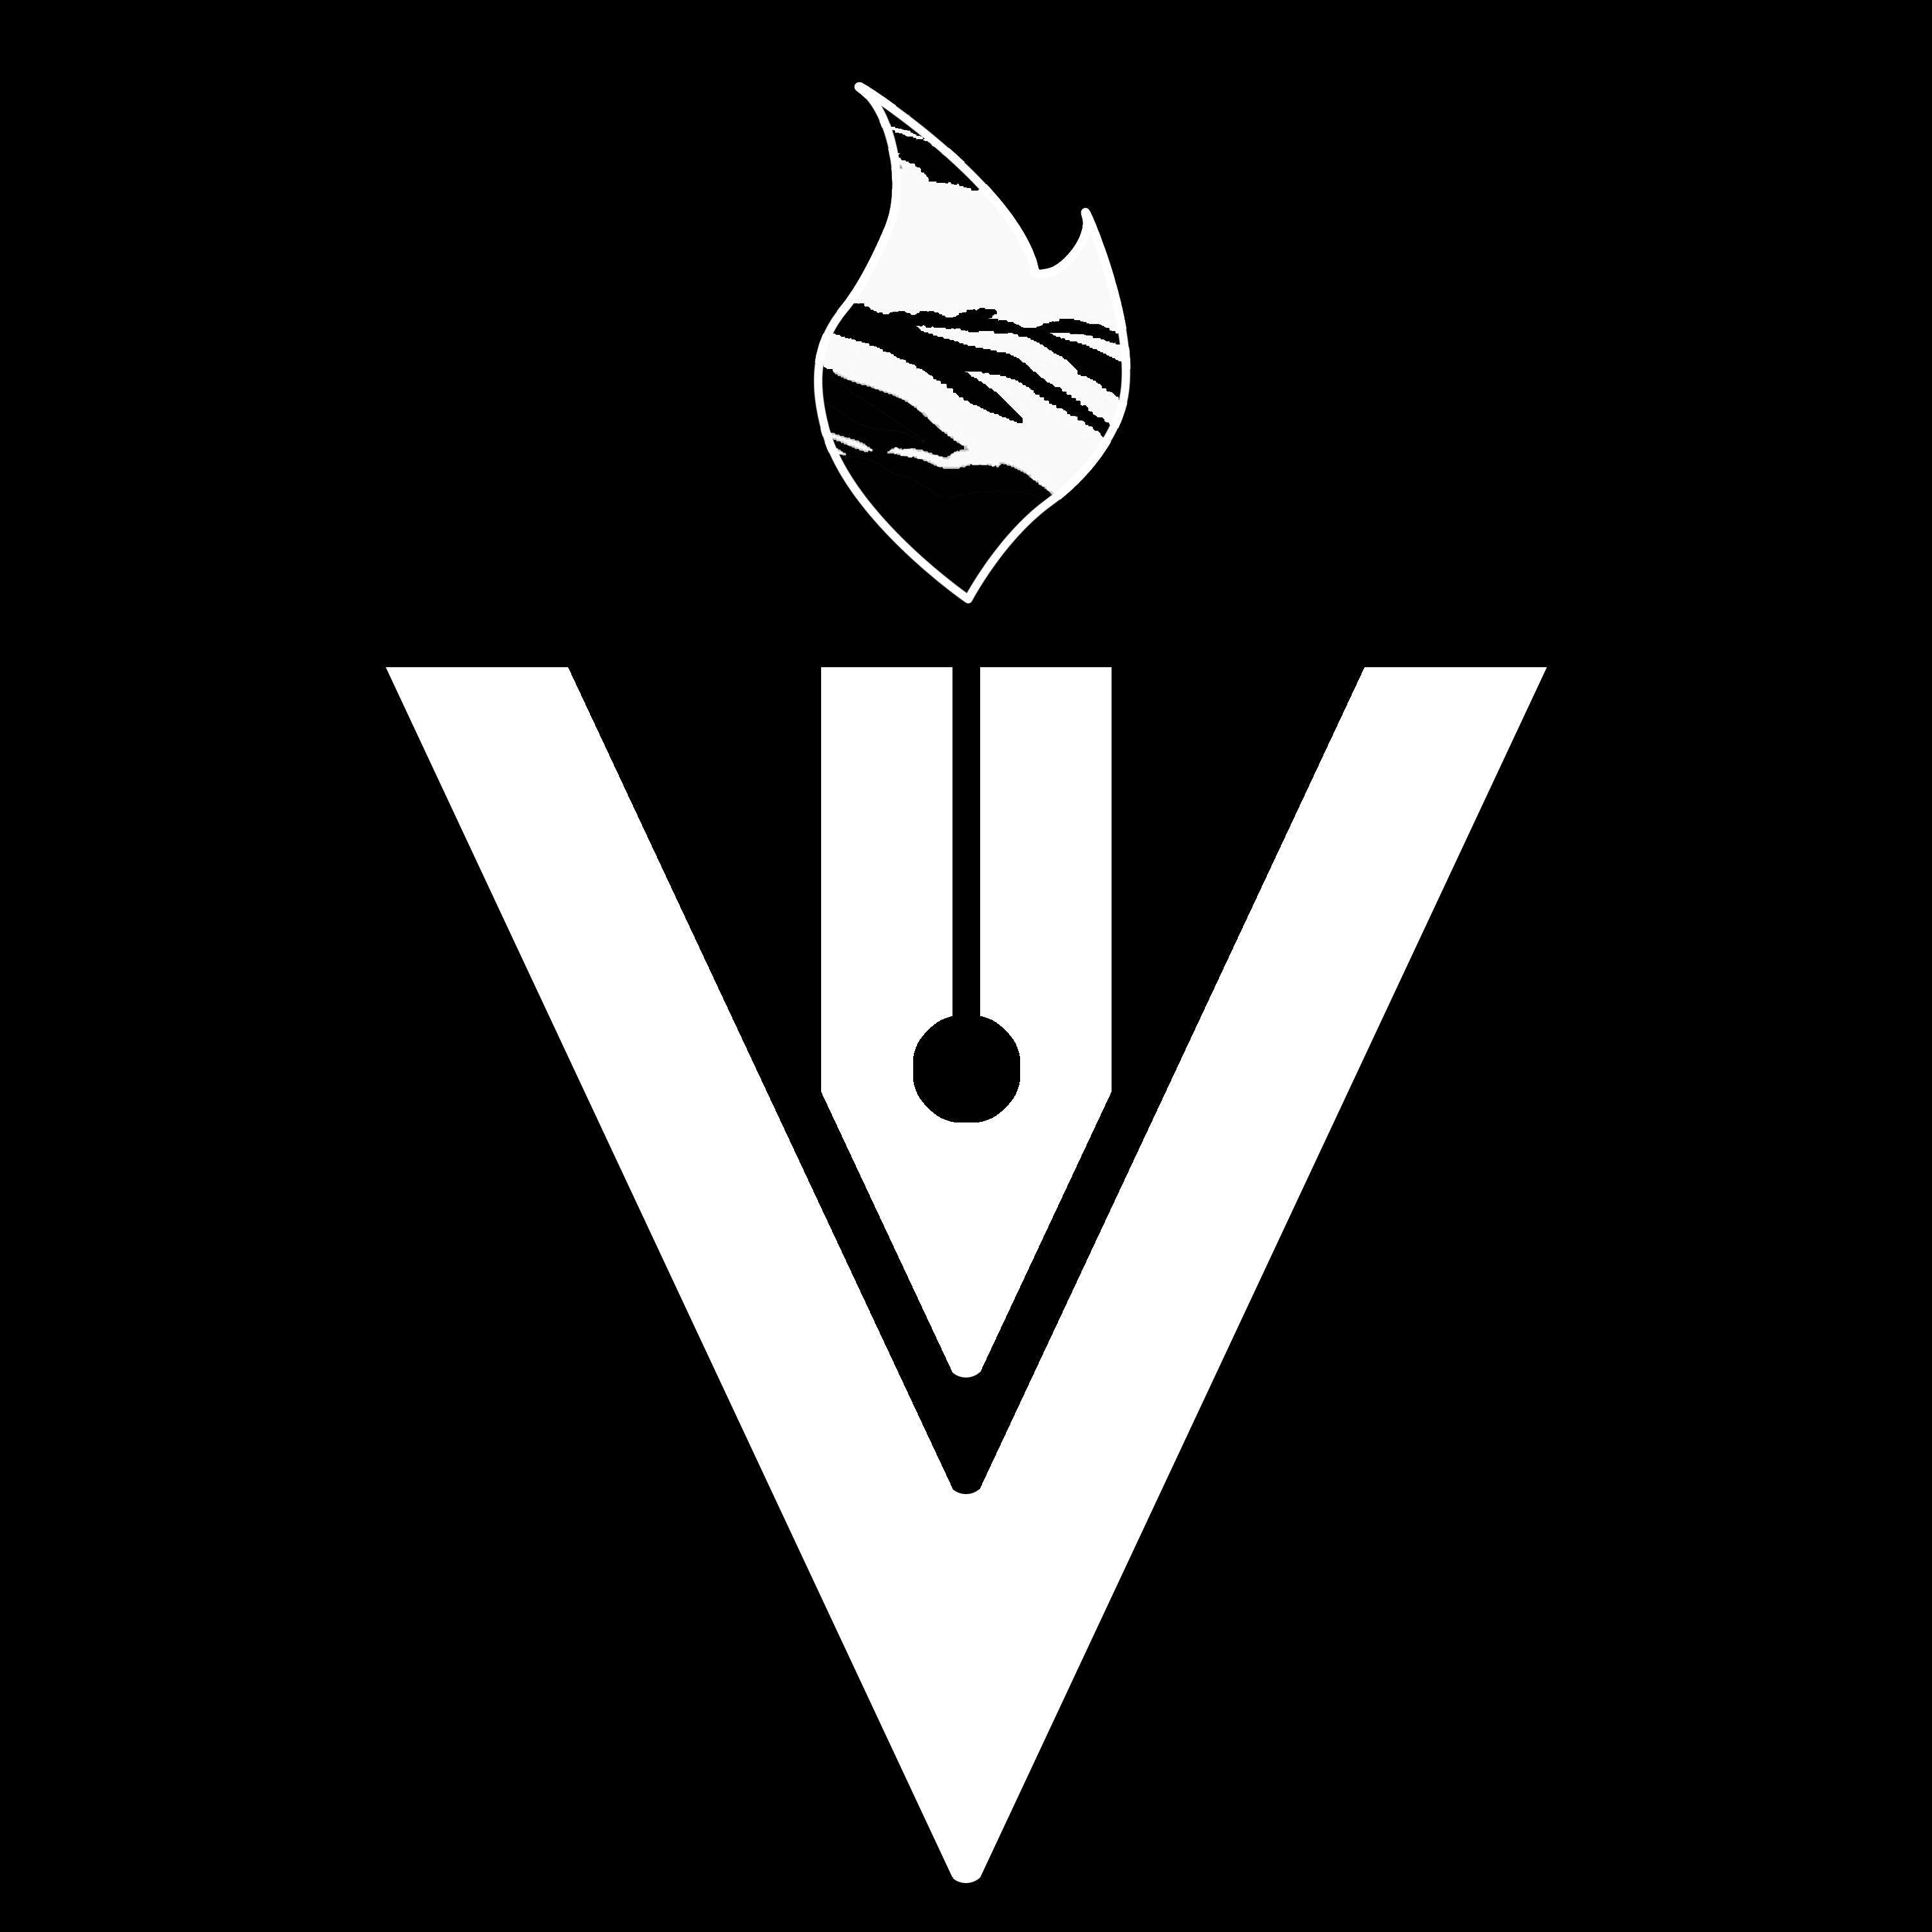 Vi Logo - Vision In Fusion – VIVA VI VI LOGO FLAME – The Cypher